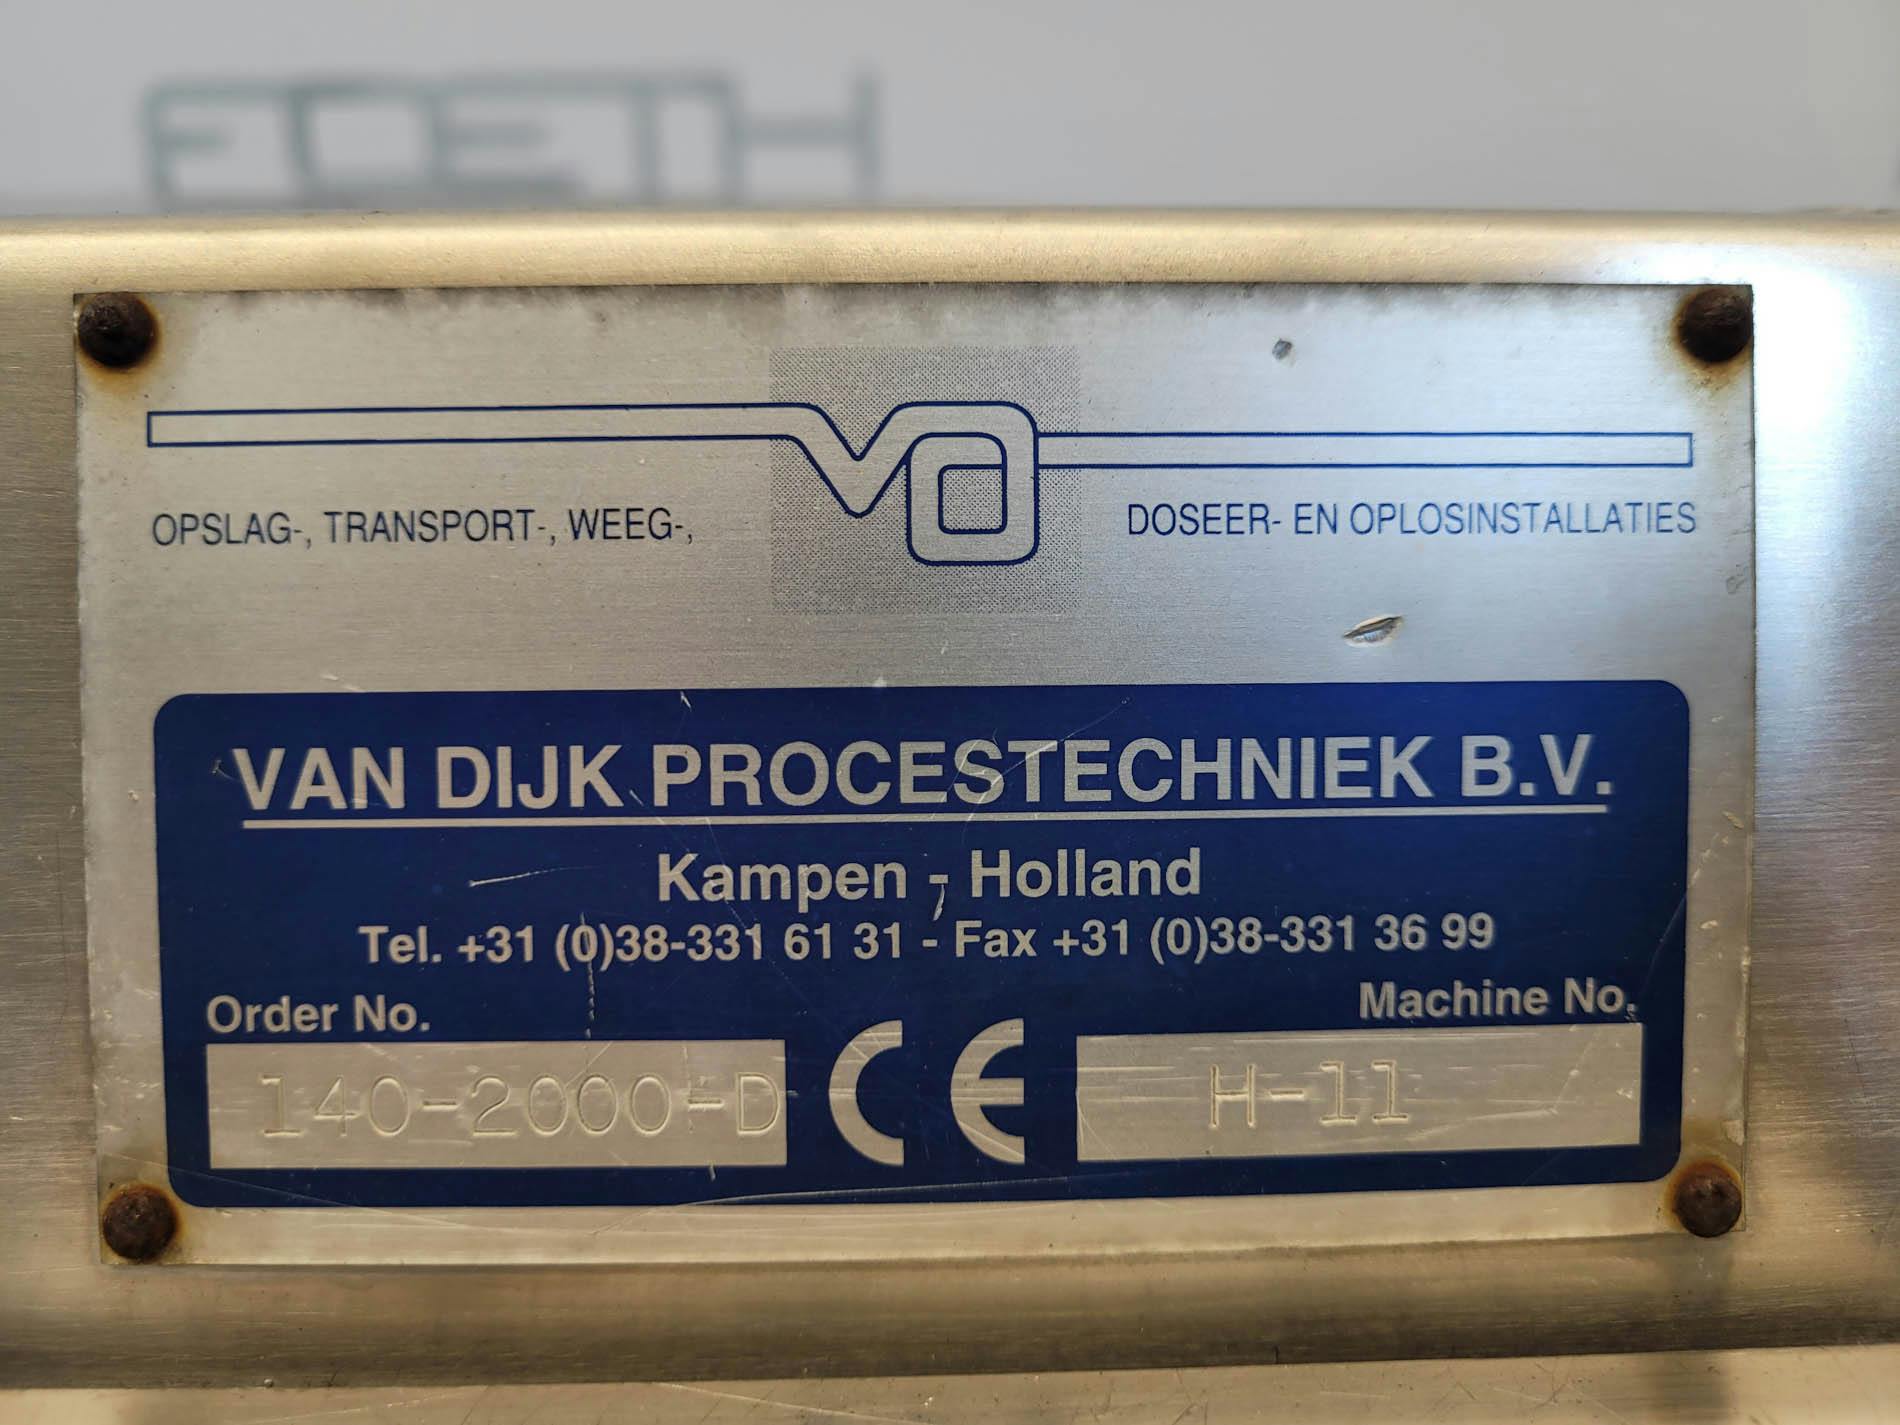 Van Dijk Procestechniek H-11 - Station de vidange de sacs - image 14